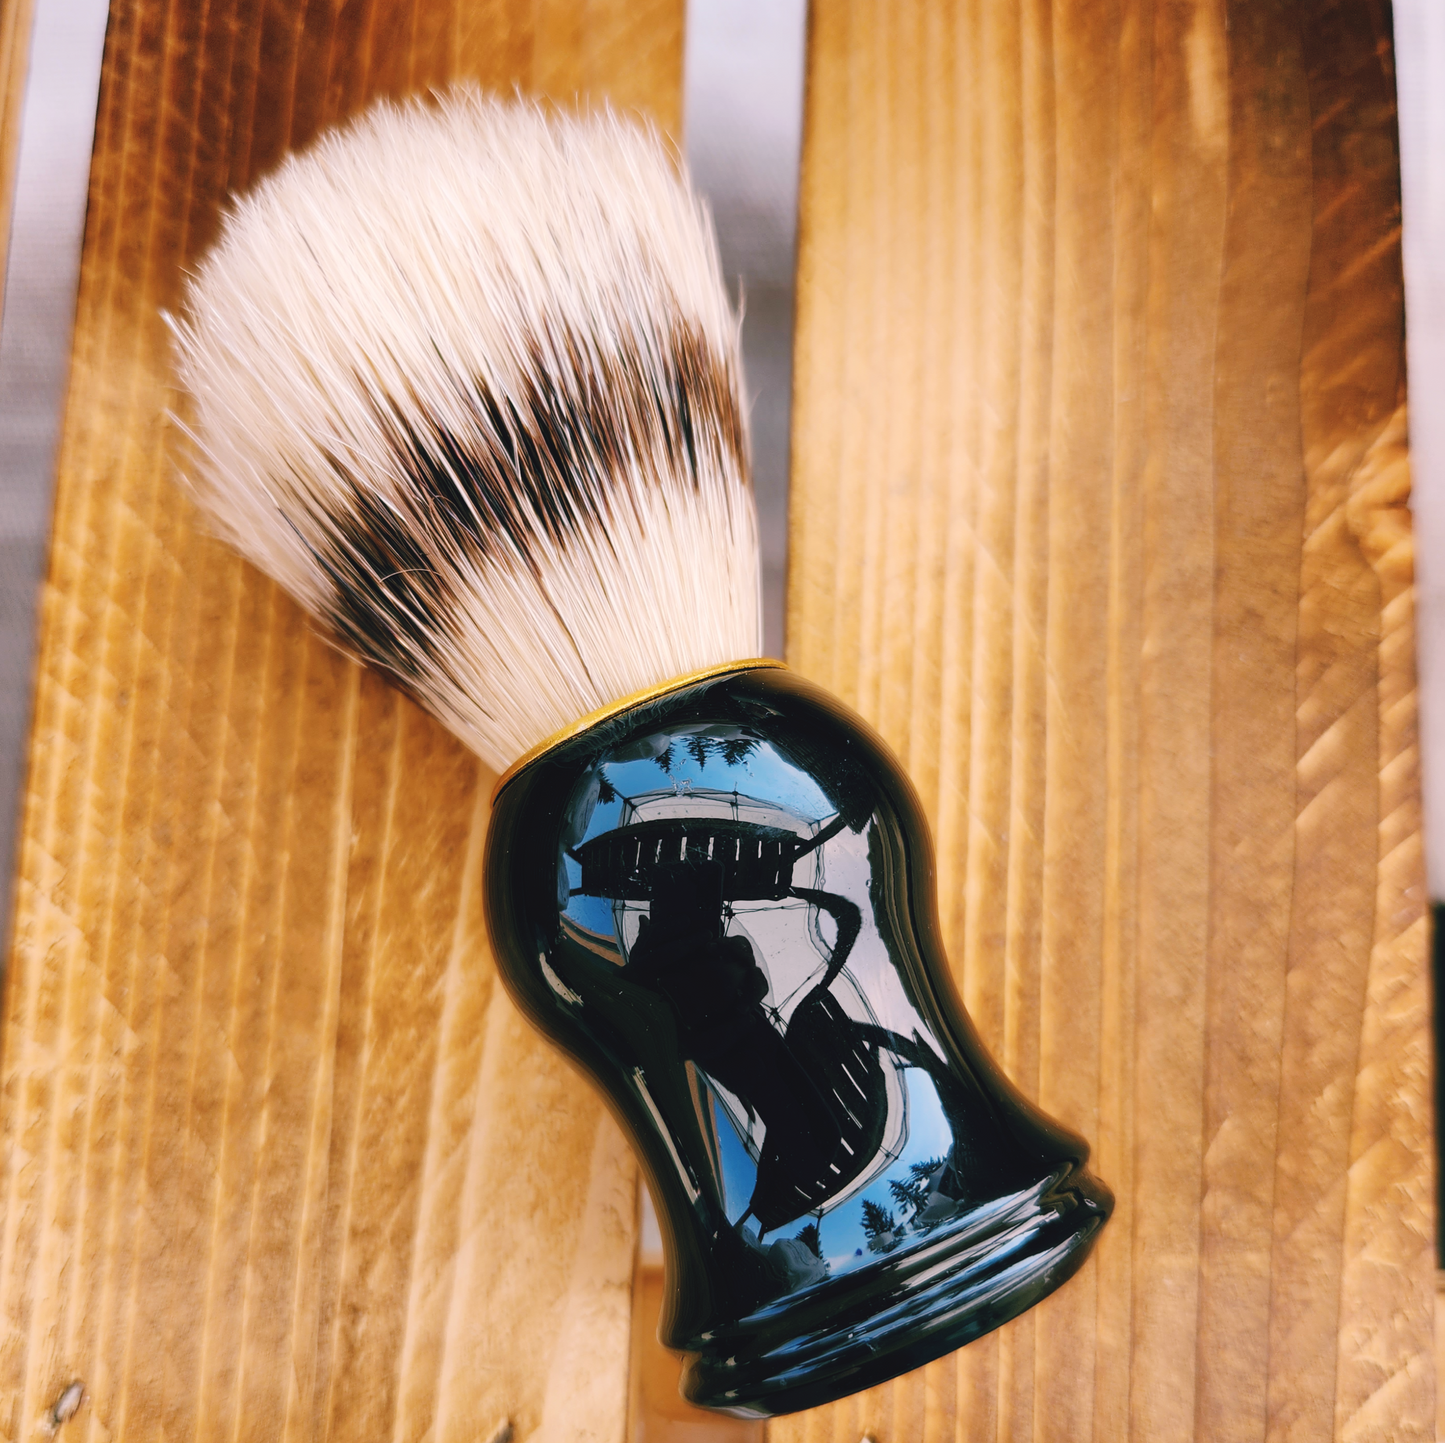 Badger hair shave brush